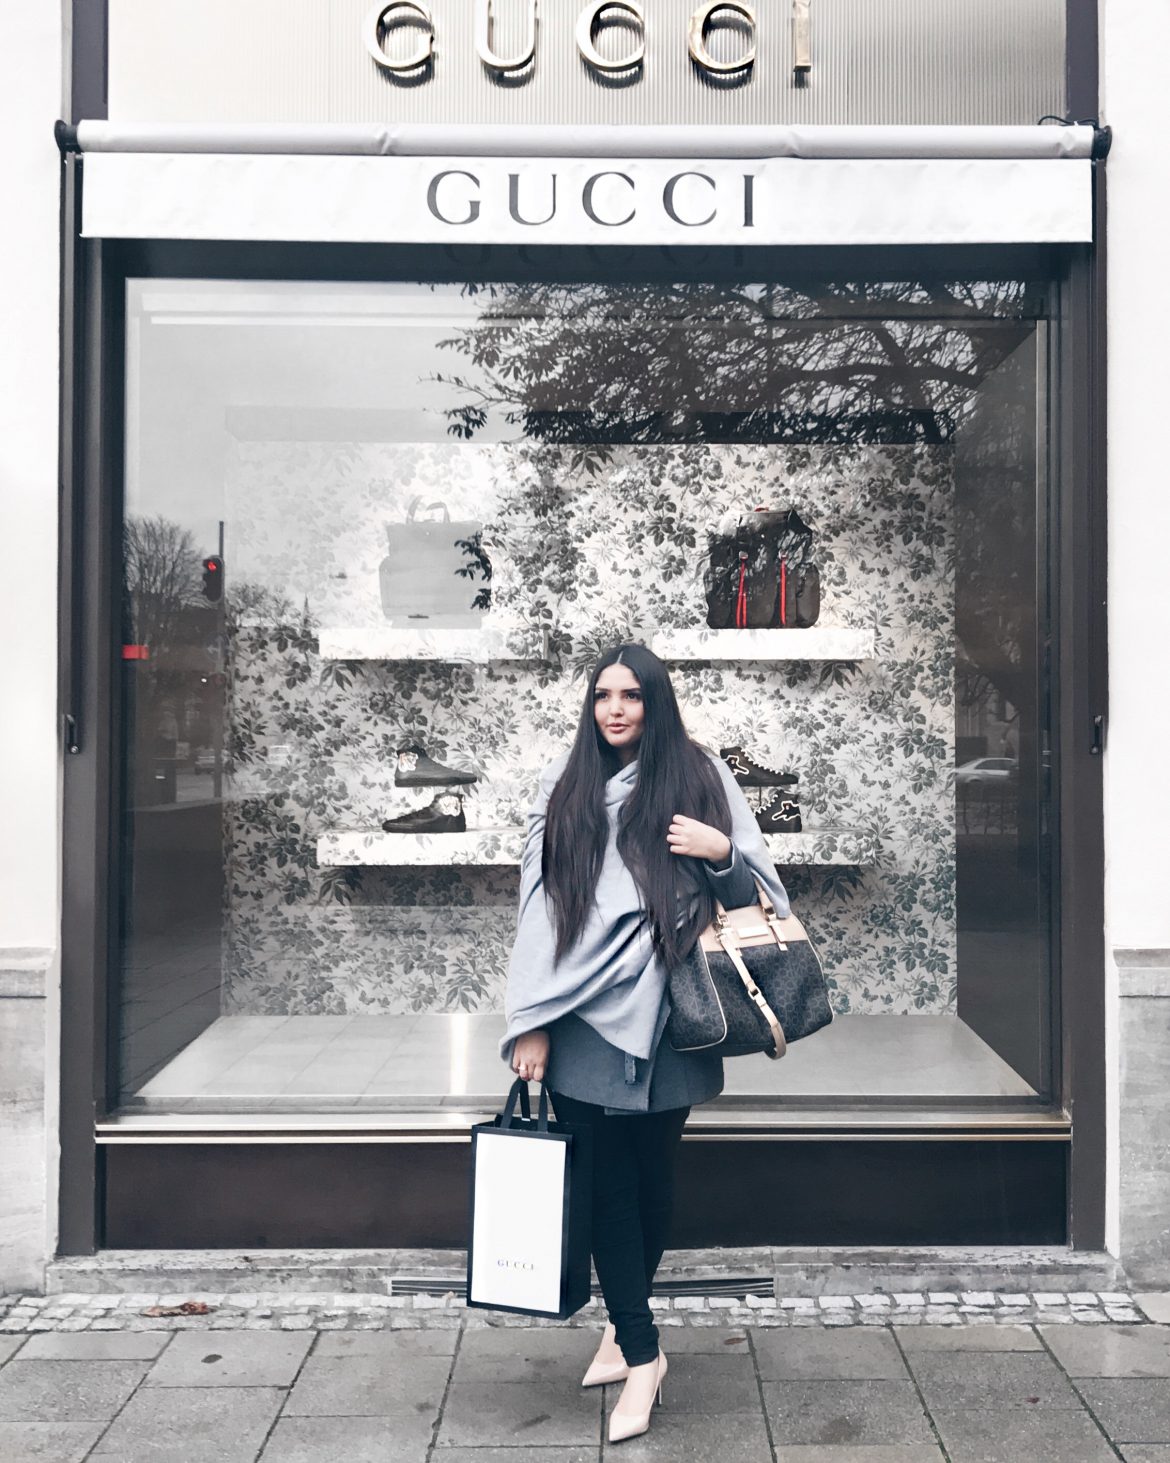 Gucci Store - Loja Gucci - Gucci Shopping - Kezia Happuck